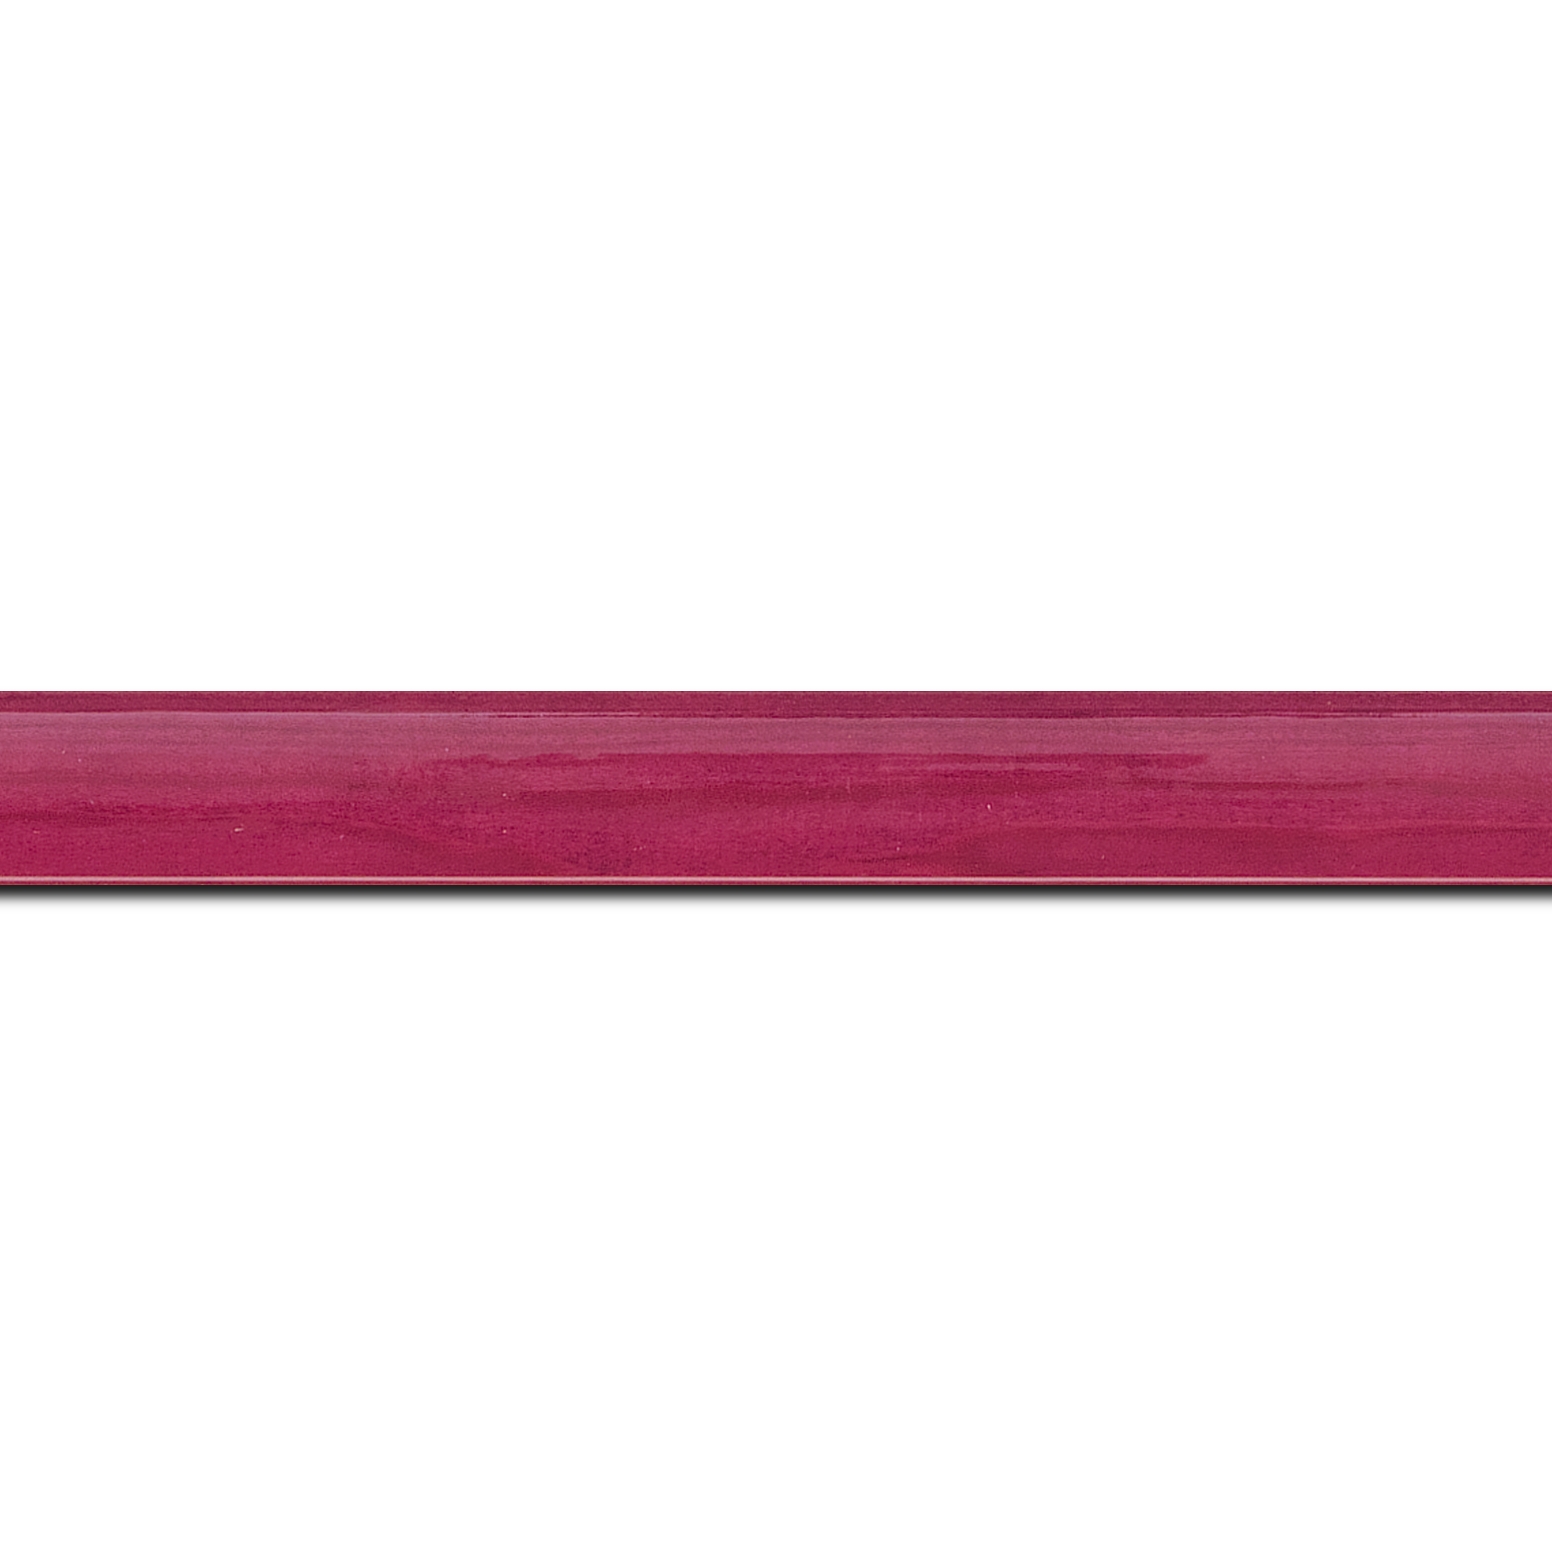 Pack par 12m, bois profil arrondi plongeant largeur 2cm couleur rose fushia vernis sur pin (veine du bois apparent) (longueur baguette pouvant varier entre 2.40m et 3m selon arrivage des bois)